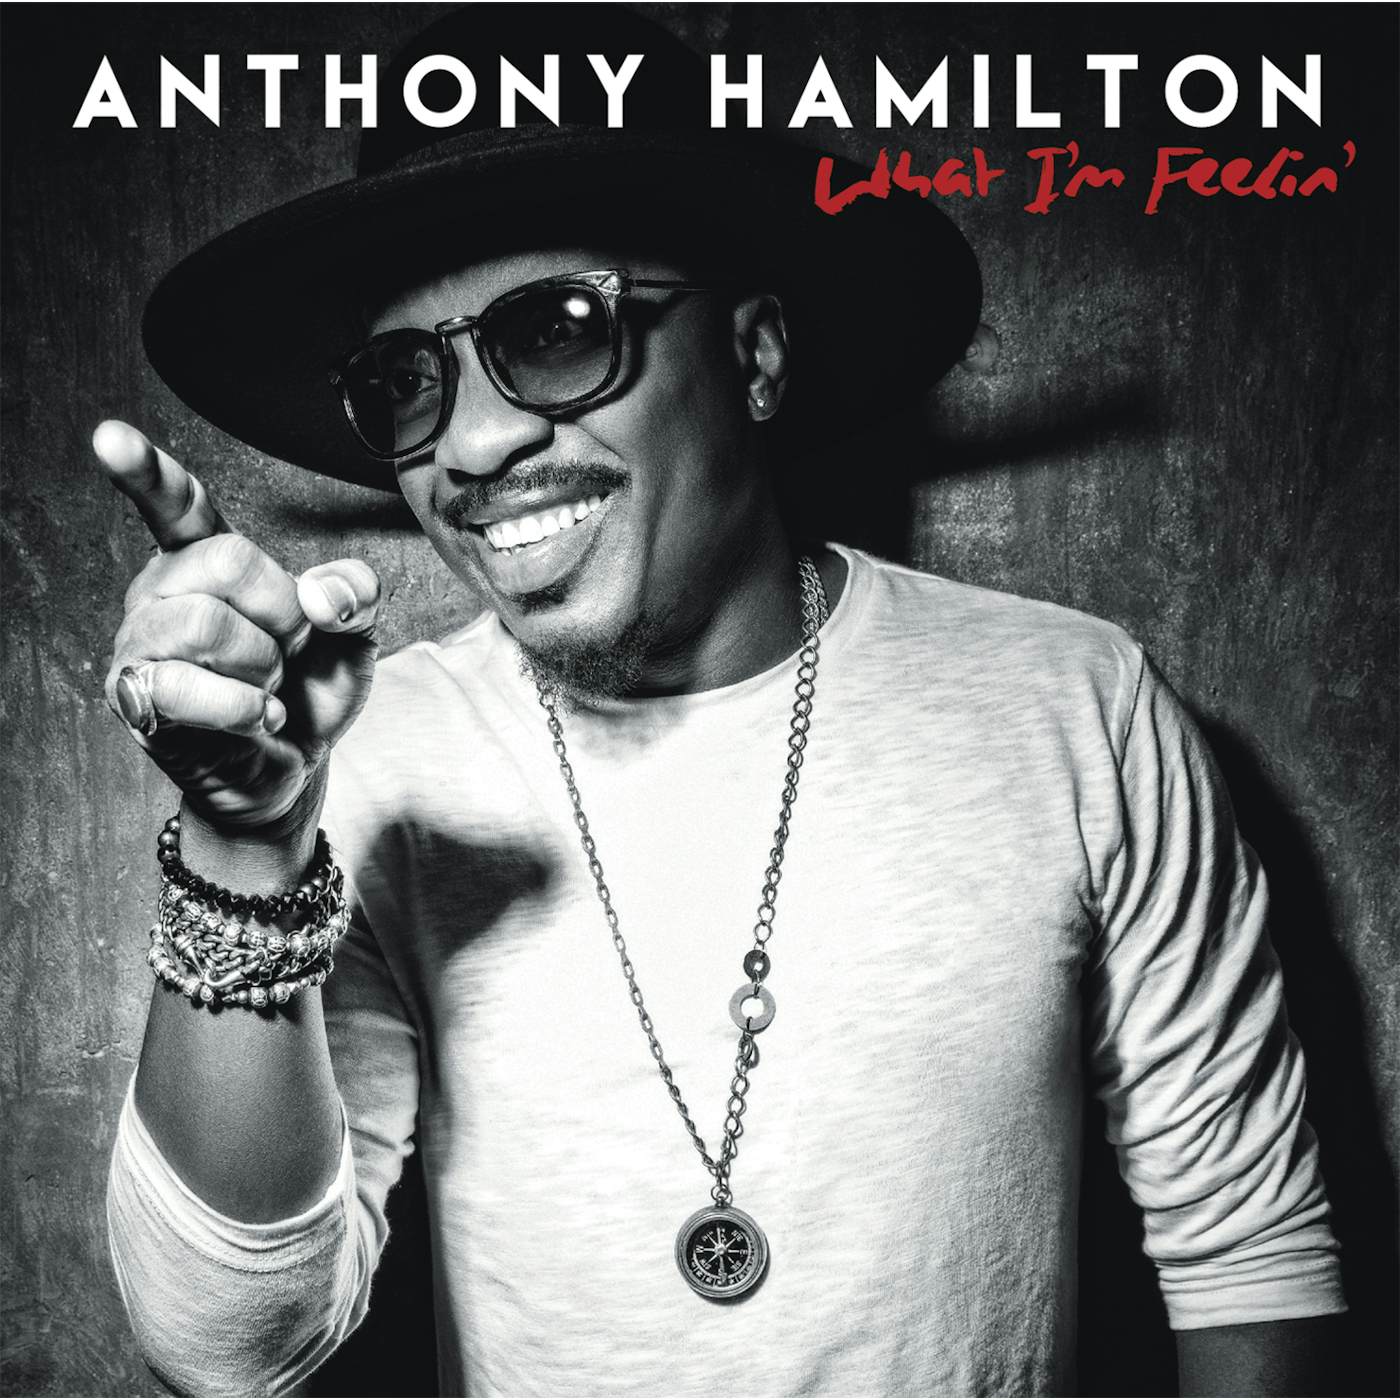 Anthony Hamilton WHAT I'M FEELIN CD